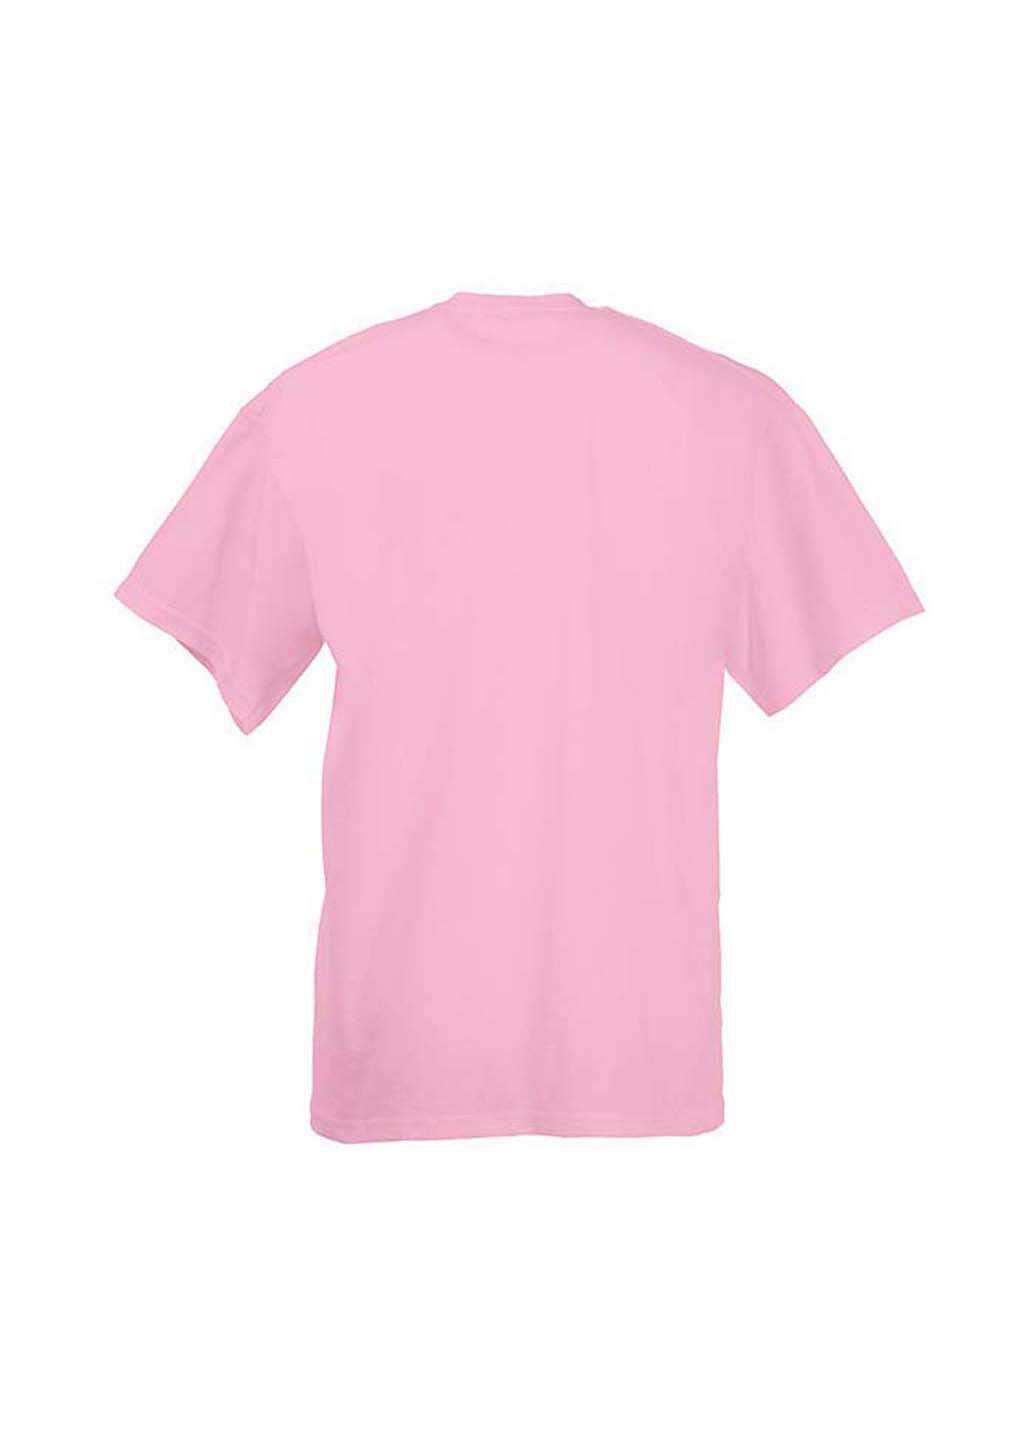 Розовая демисезонная футболка Fruit of the Loom 61033052164